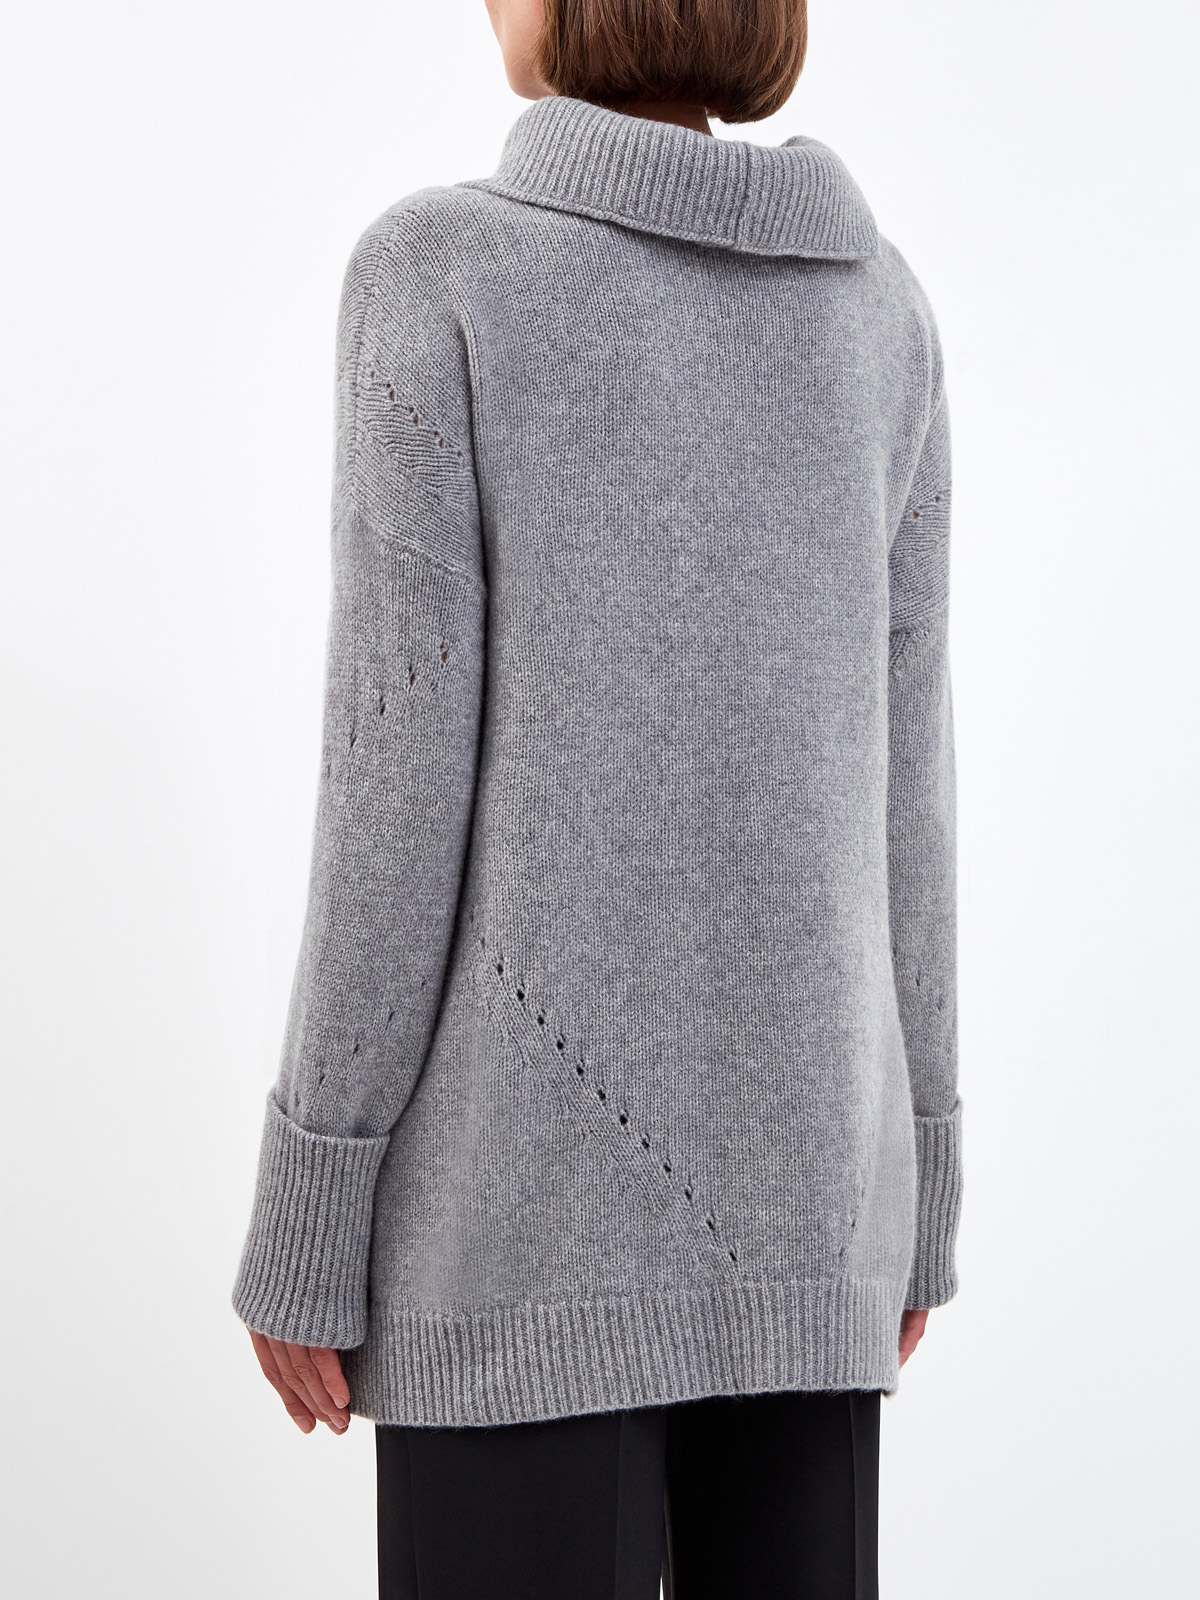 Удлиненный свитер из пряжи на основе шерсти и кашемира ERMANNO SCERVINO, цвет серый, размер 38;40;42 - фото 4